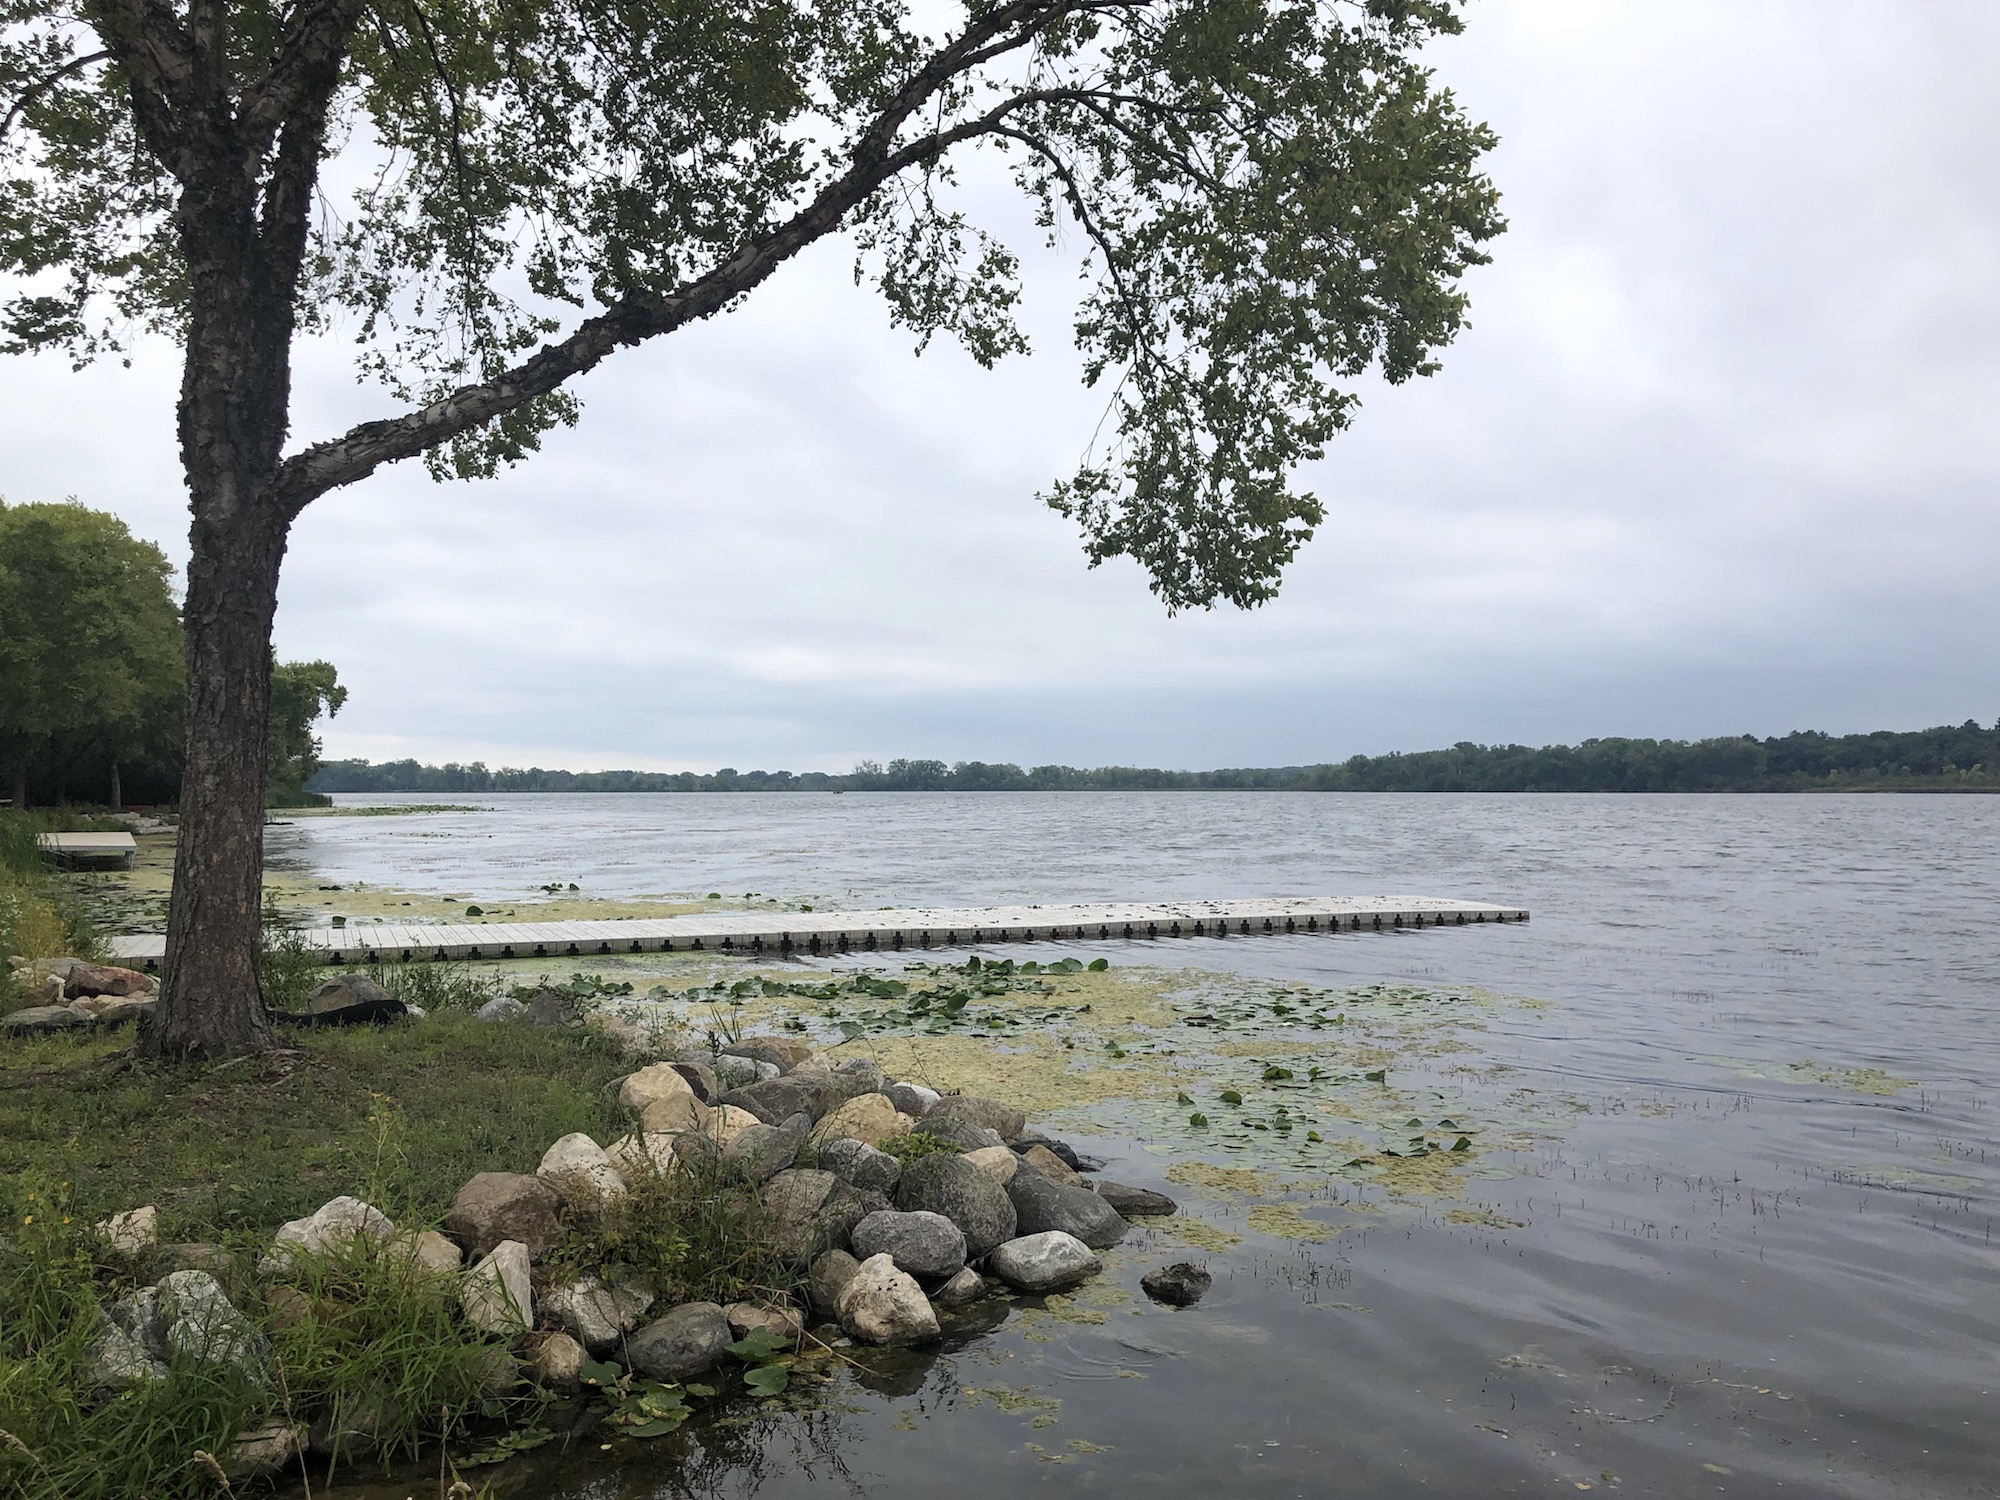 Lake Wingra on September 9, 2019.